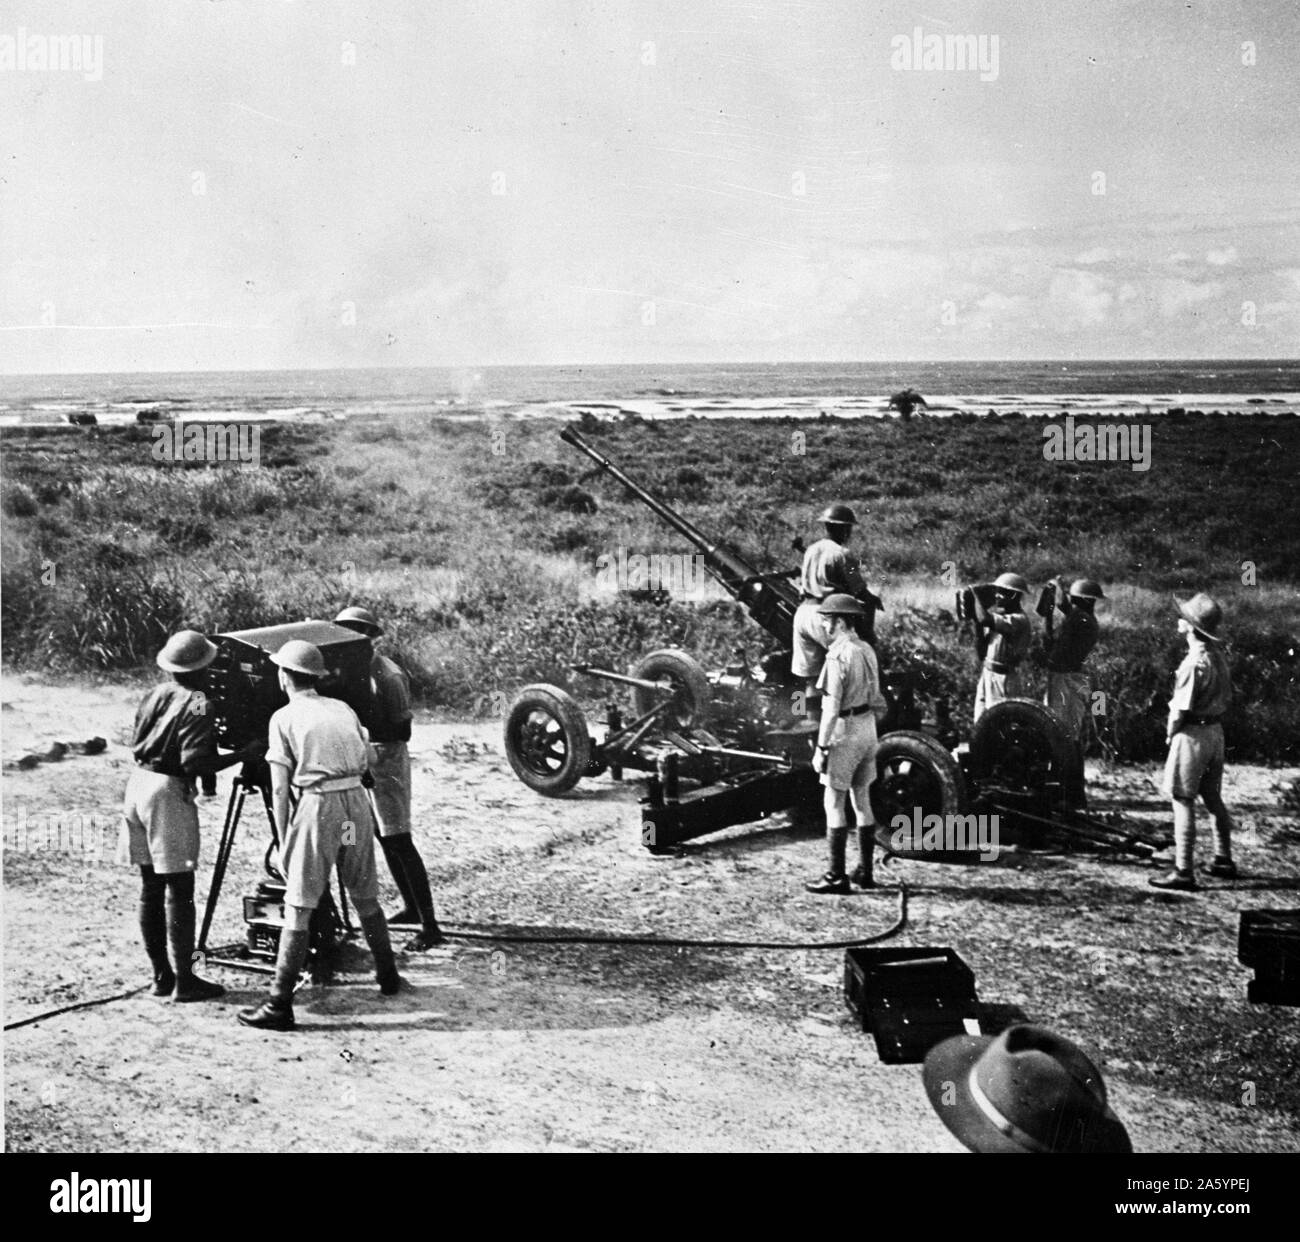 Impression photographique de tir de canon Bofors cible au cours de la pratique. Cette batterie a un Gold Coast britannique mixtes et des armes à feu de l'Afrique de l'équipage. Datée 1945 Banque D'Images